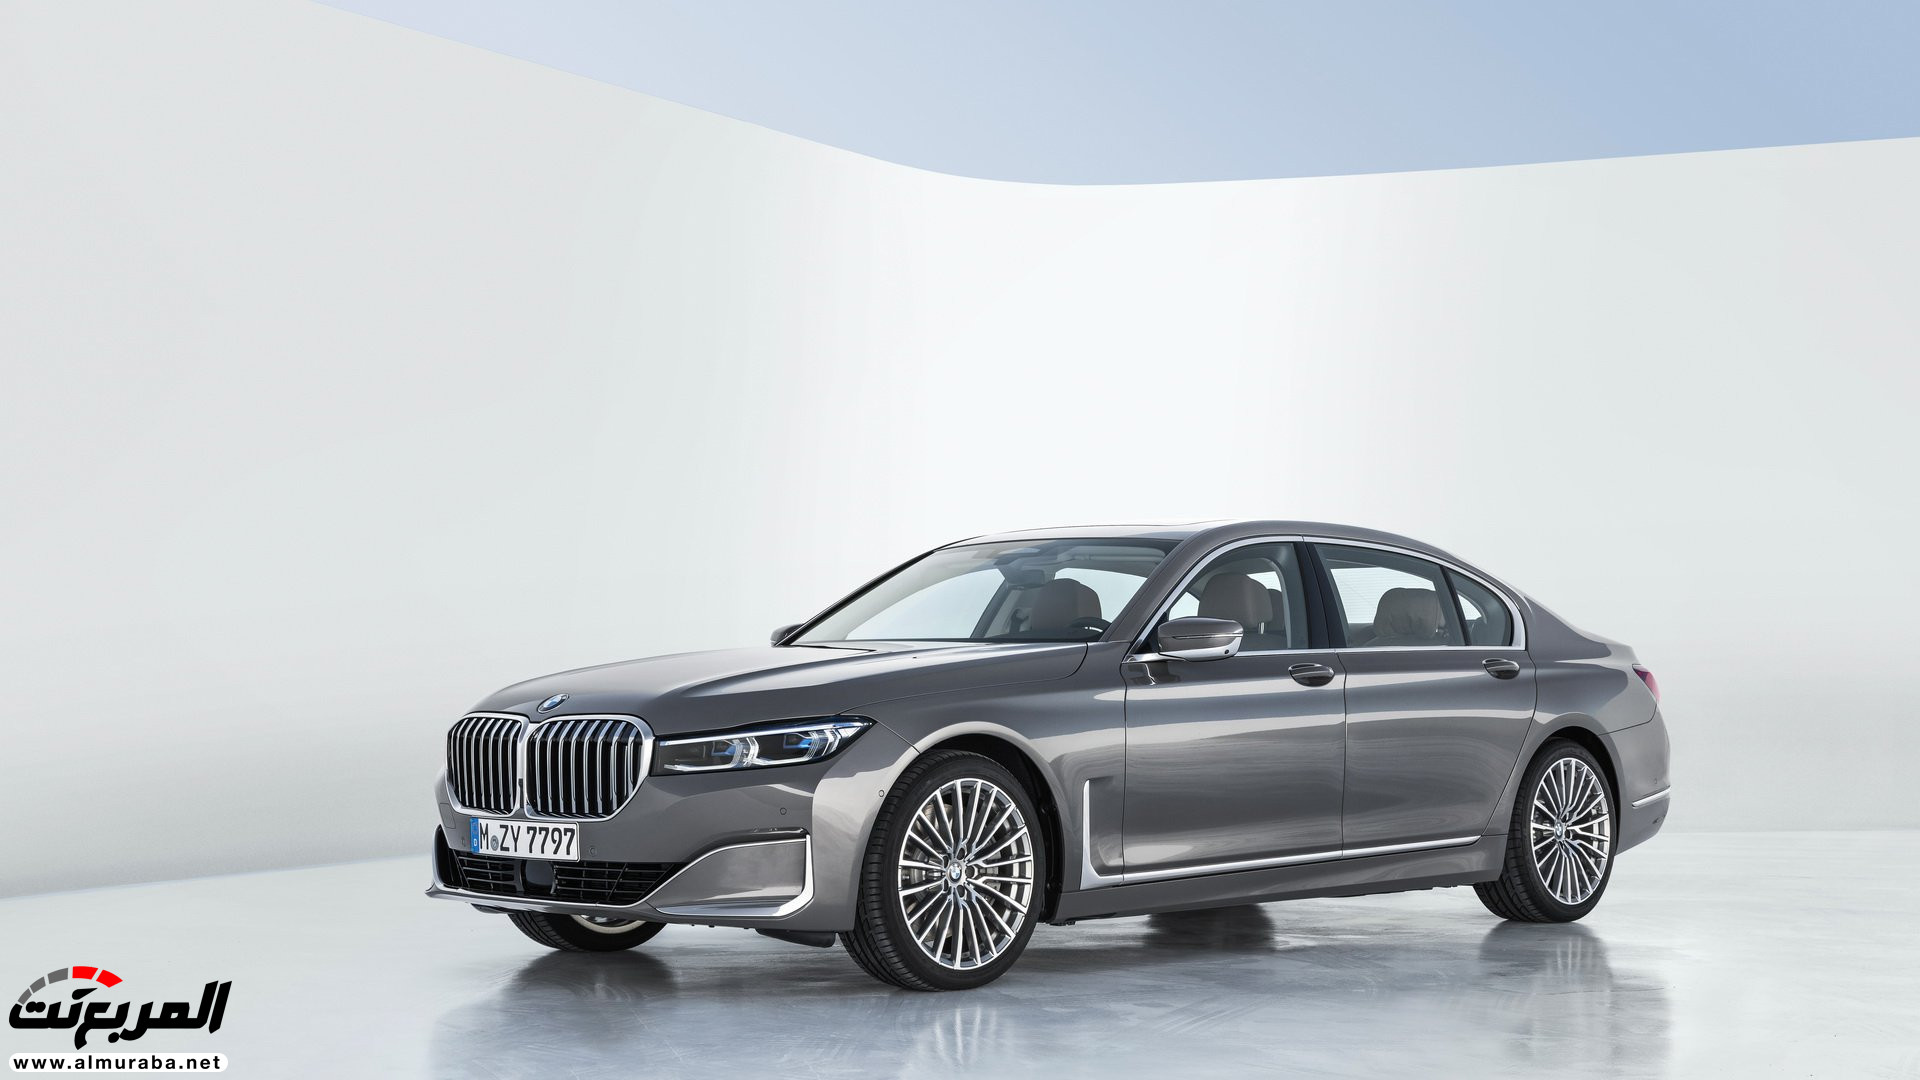 بي ام دبليو الفئة السابعة 2020 المحدثة تكشف نفسها رسمياً "صور ومواصفات" BMW 7 Series 287